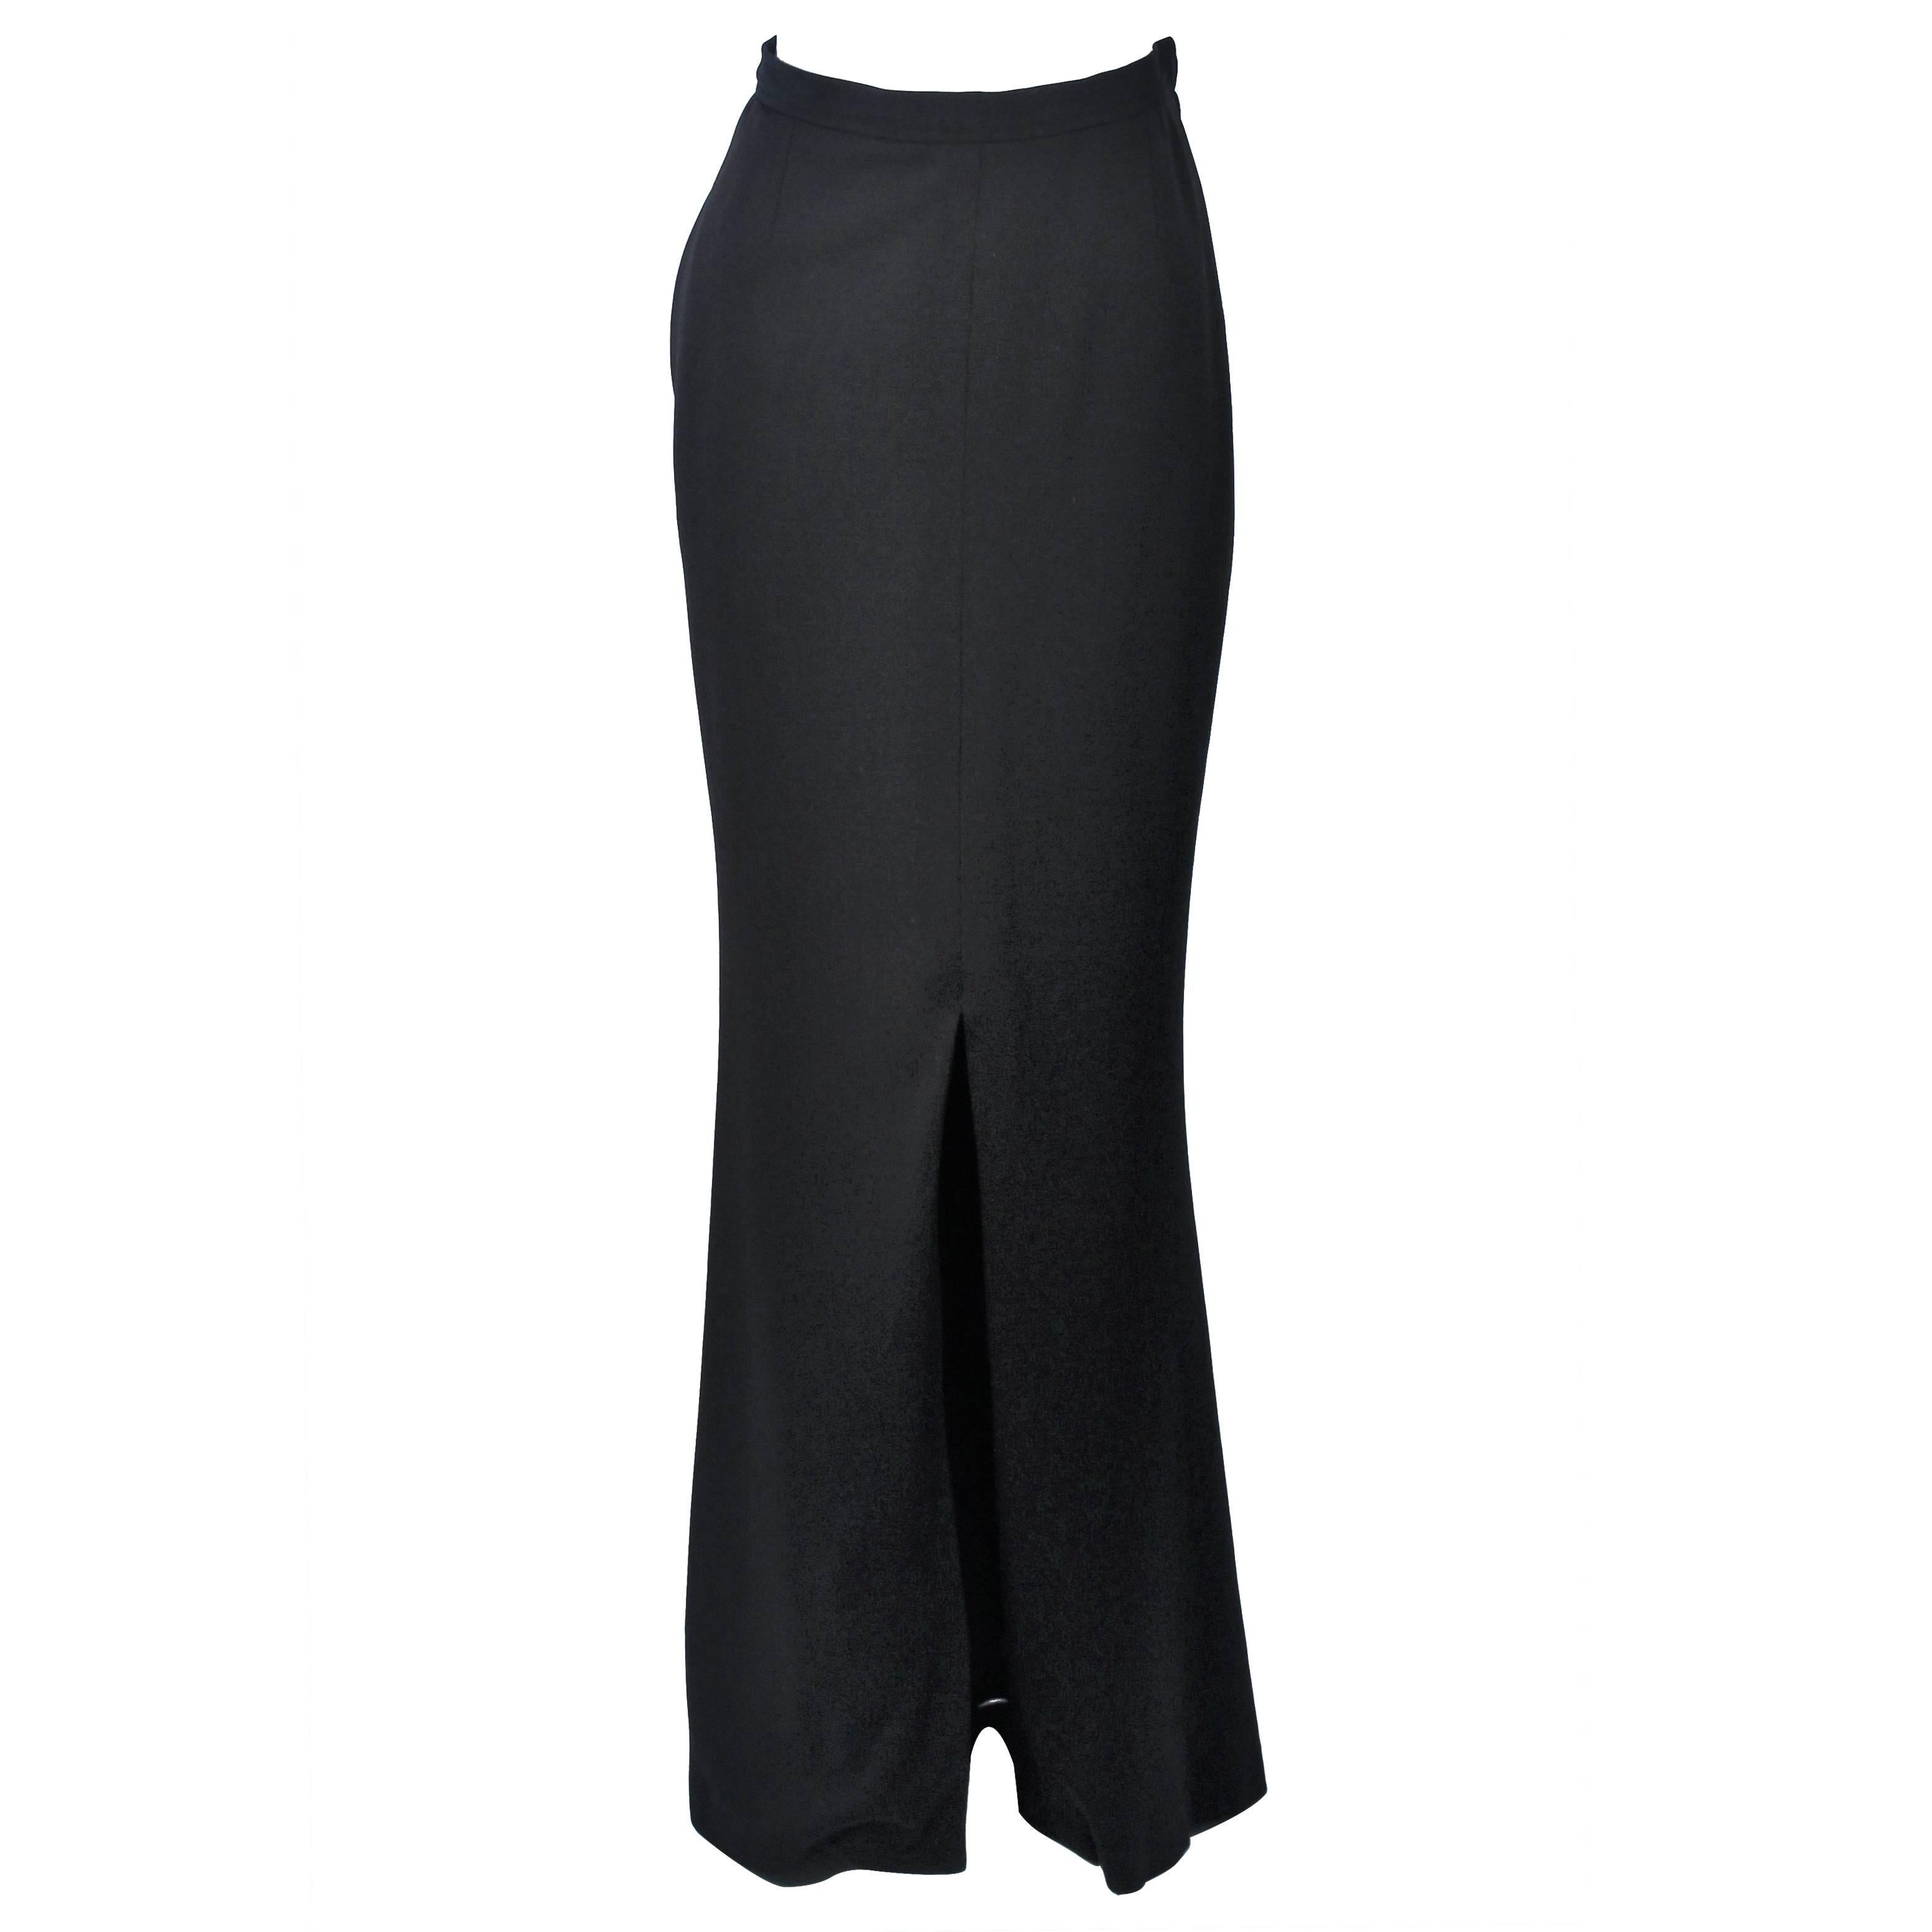 YVES SAINT LAURENT Black Full Length Mermaid Flare Skirt with Slit Size 2-4